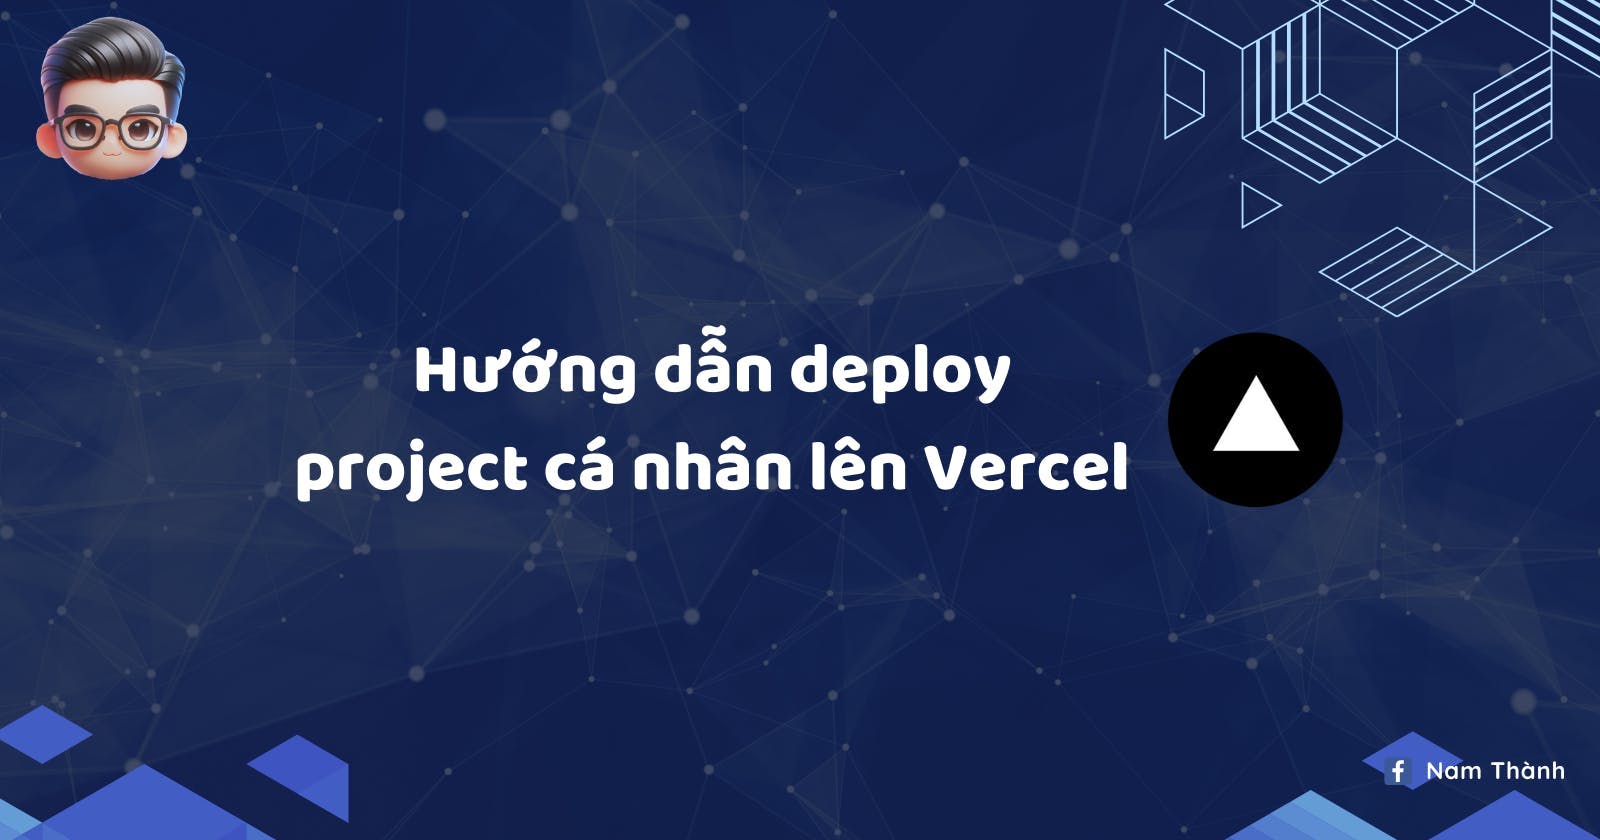 Hướng dẫn deploy project của bạn lên Vercel